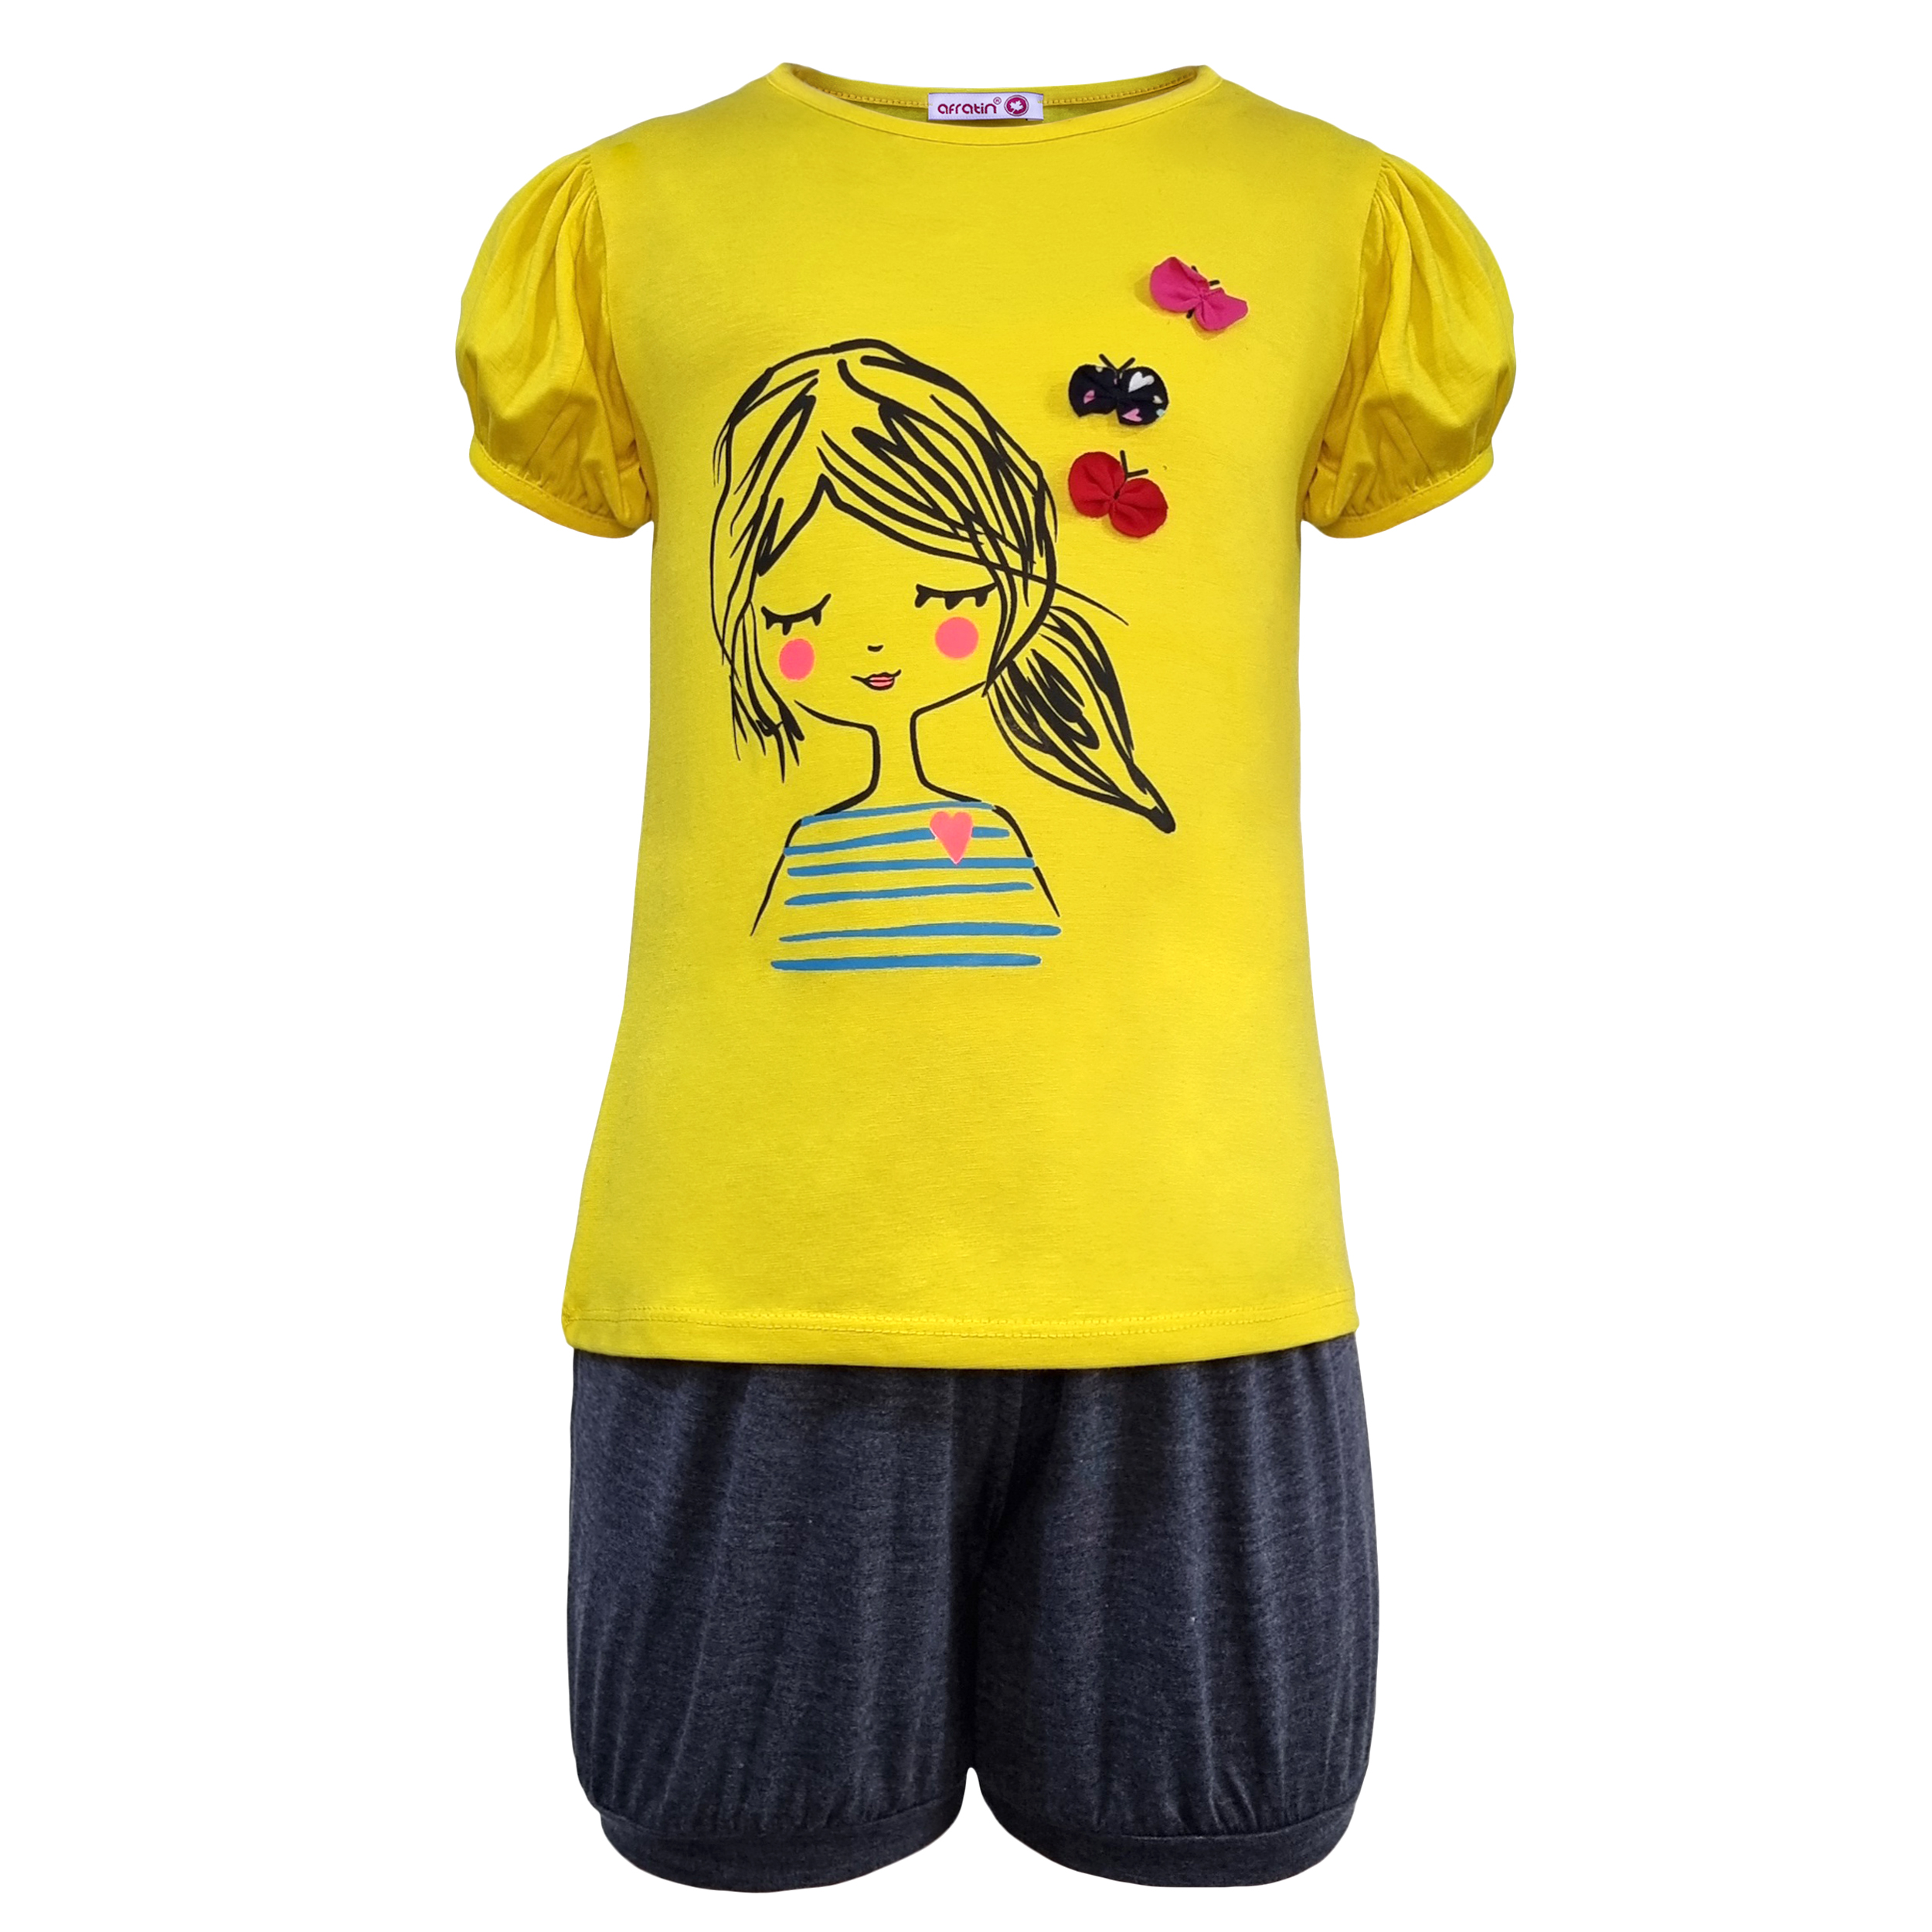 ست تی شرت و شلوارک دخترانه افراتین مدل دختر و پروانه رنگ زرد -  - 2